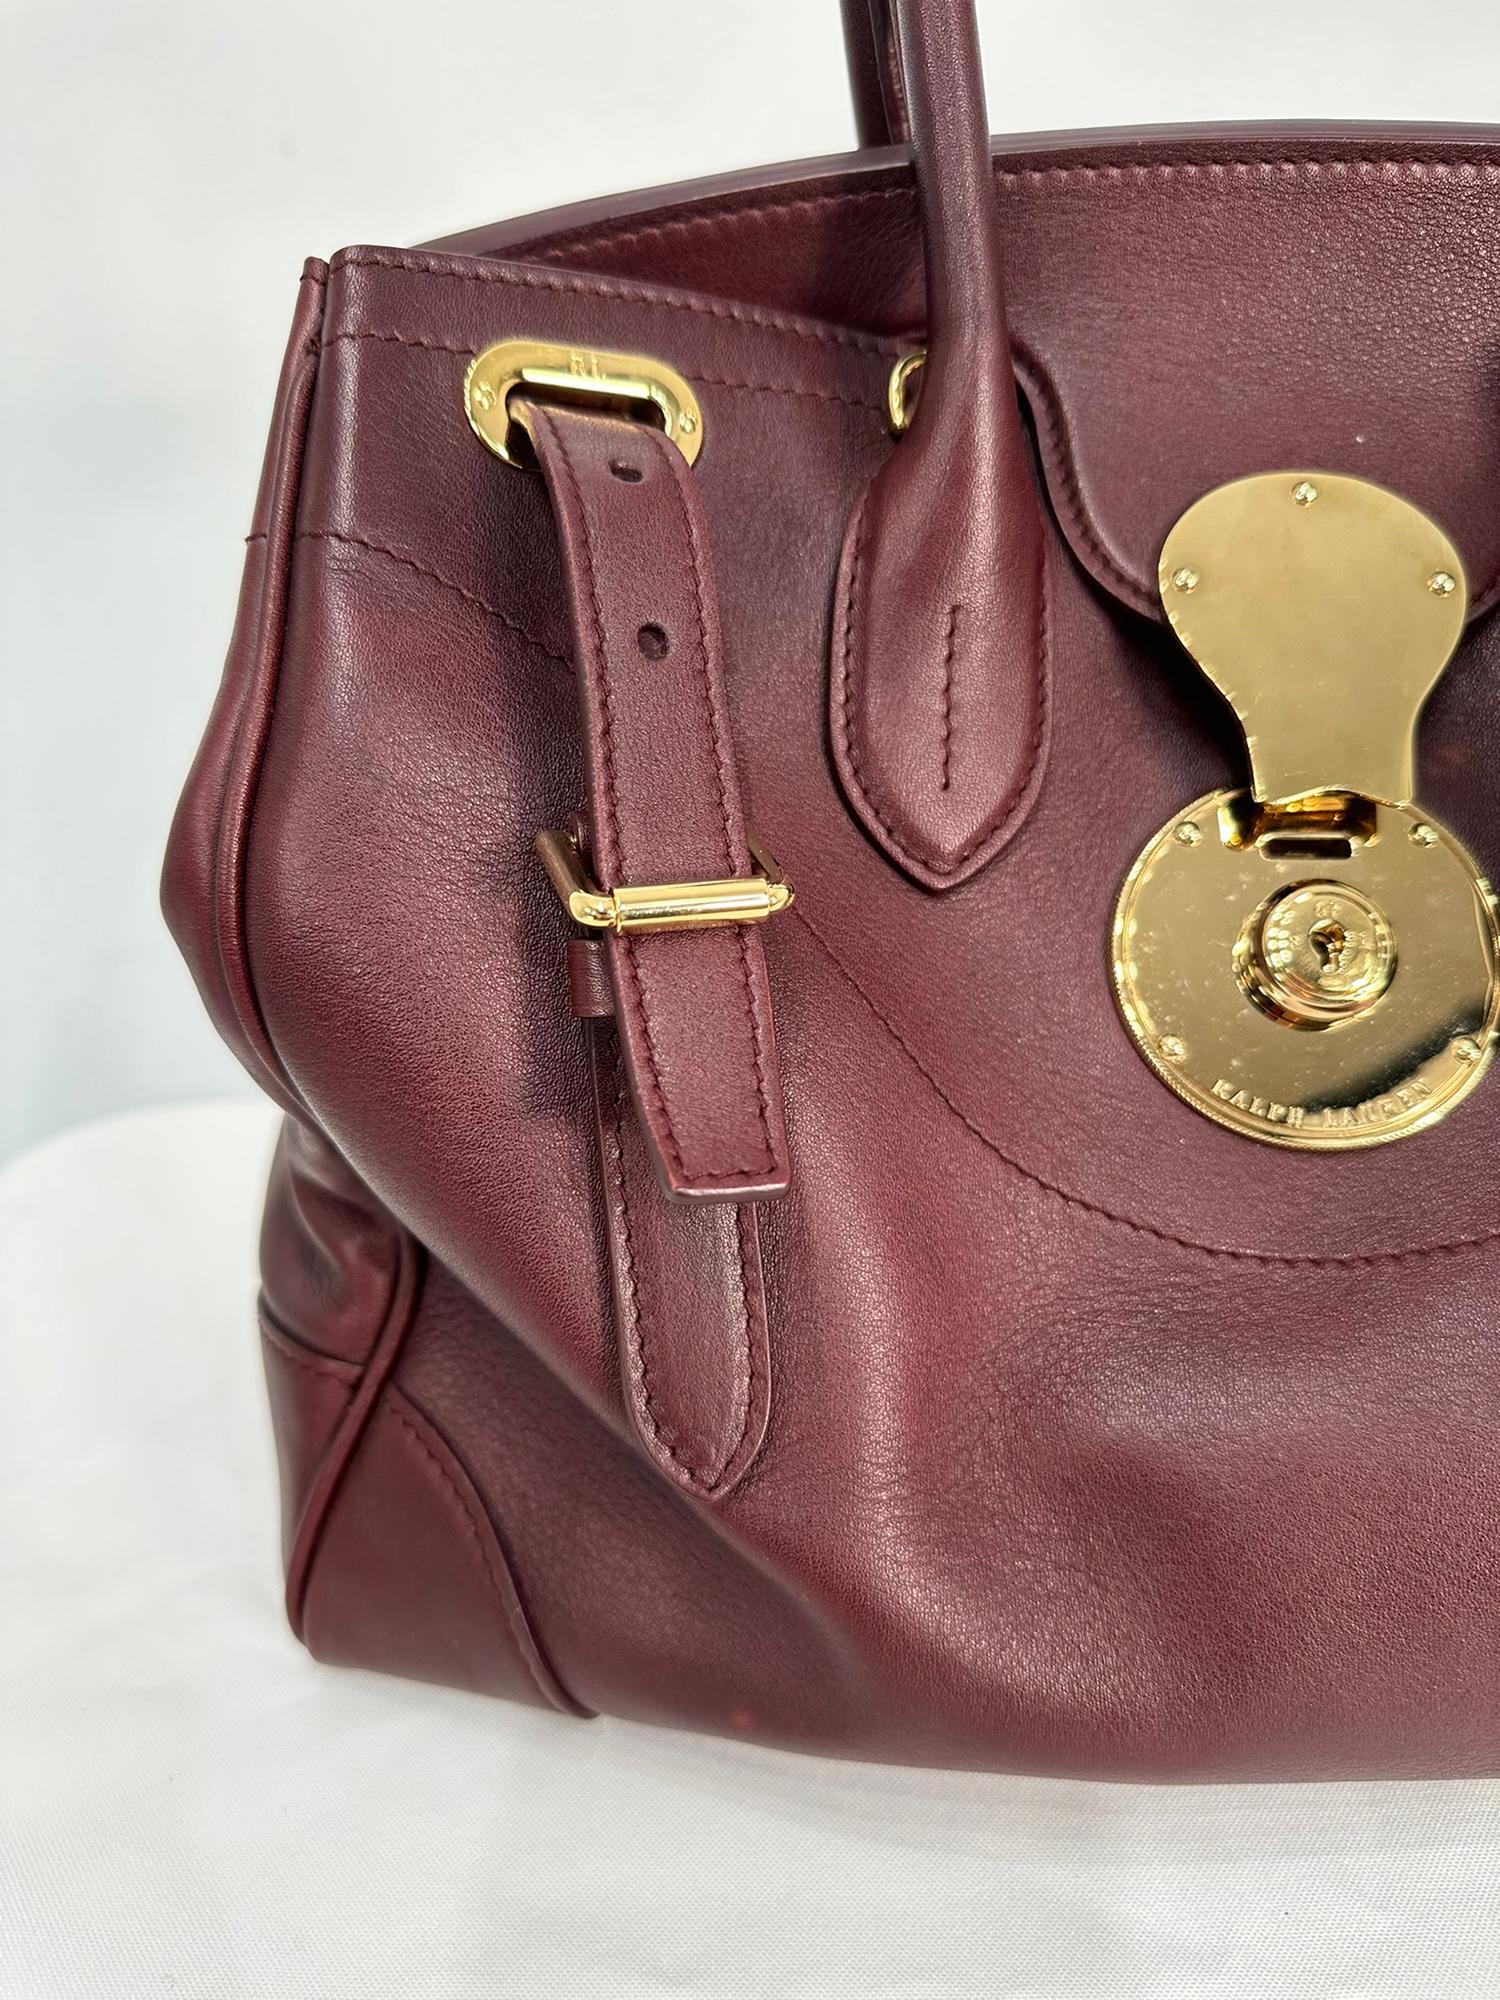 Women's or Men's Ralph Lauren Luxe Burgundy Calf Ricky 33 Gold Hardware Handbag with Accessories